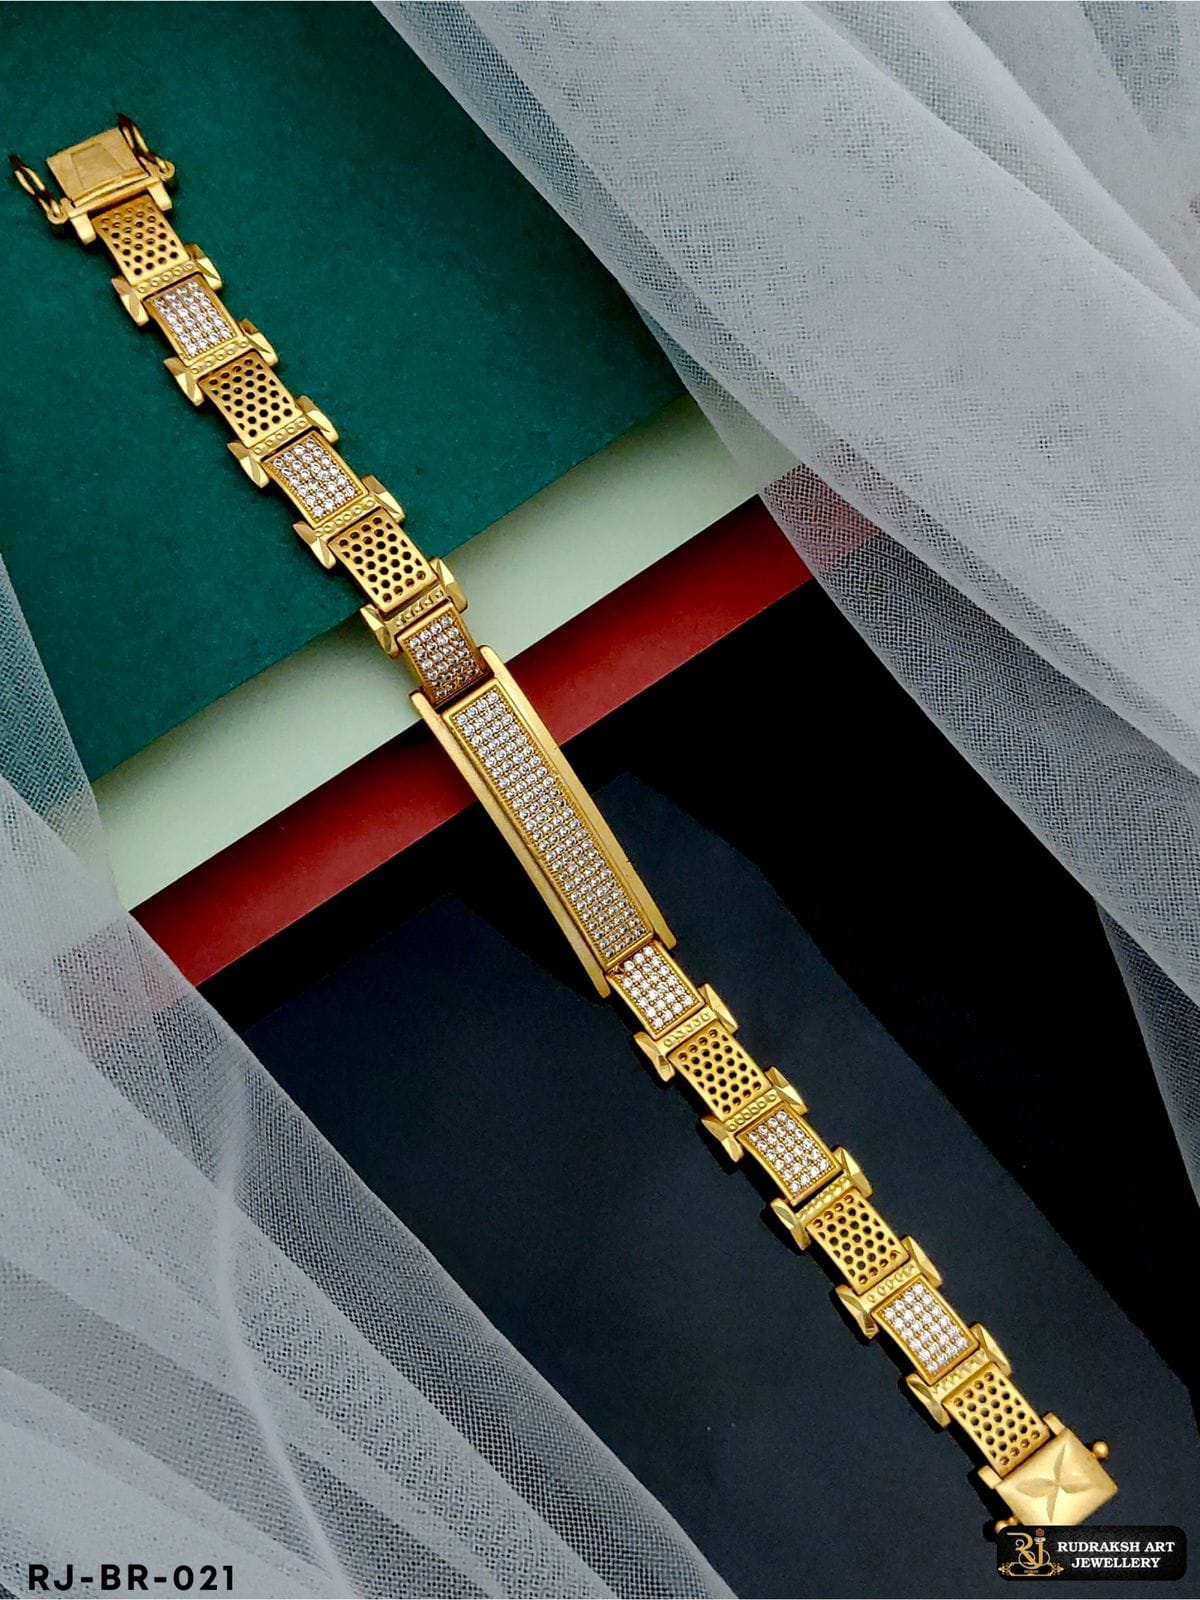 18K Gold Diamond Bracelet With Color Stones - 235-DBR167 in 36.200 Grams